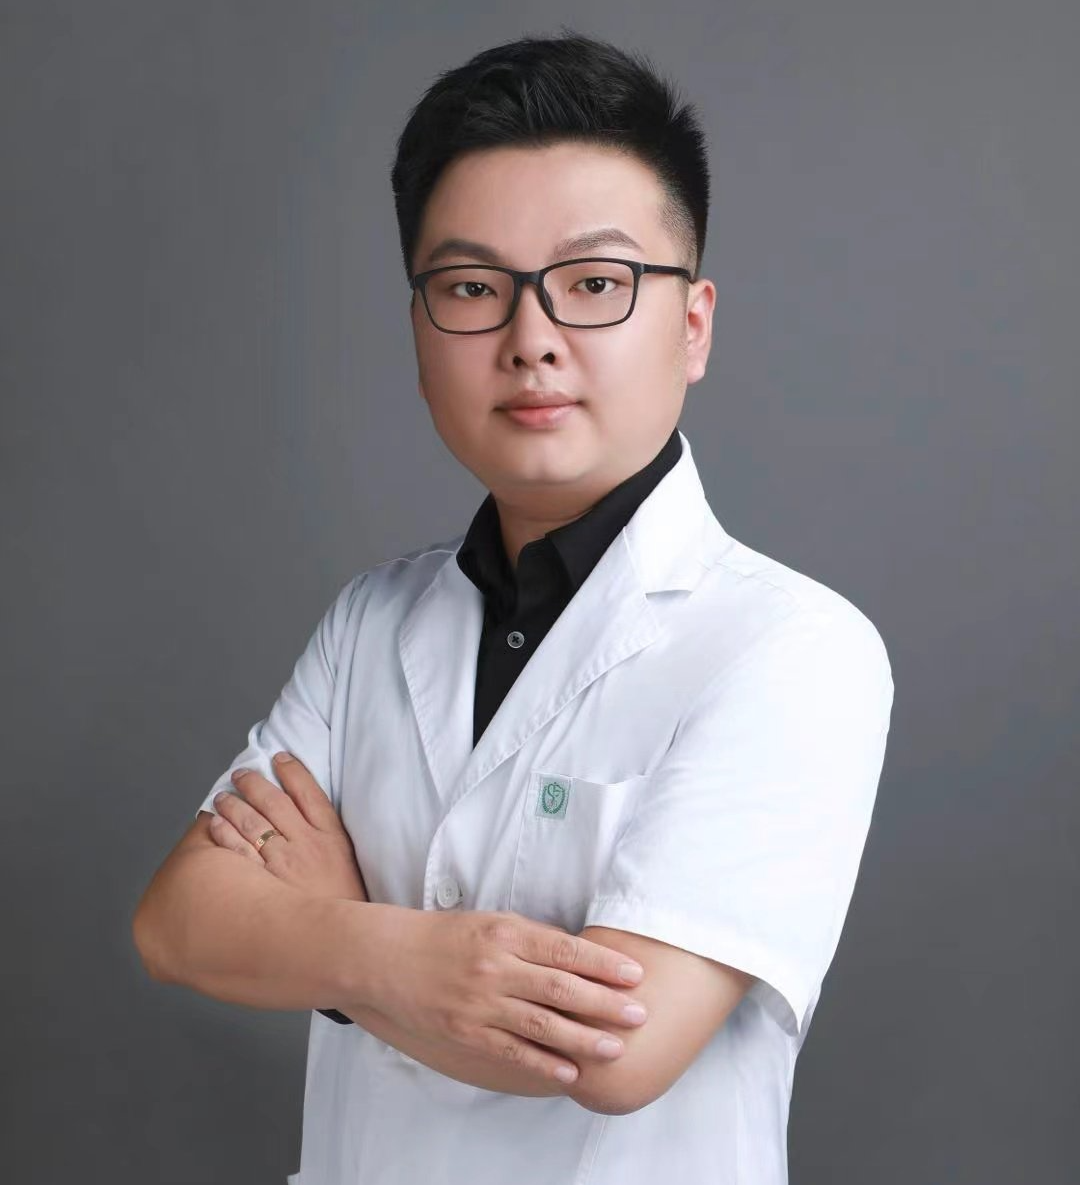 Dr. Yue Xu